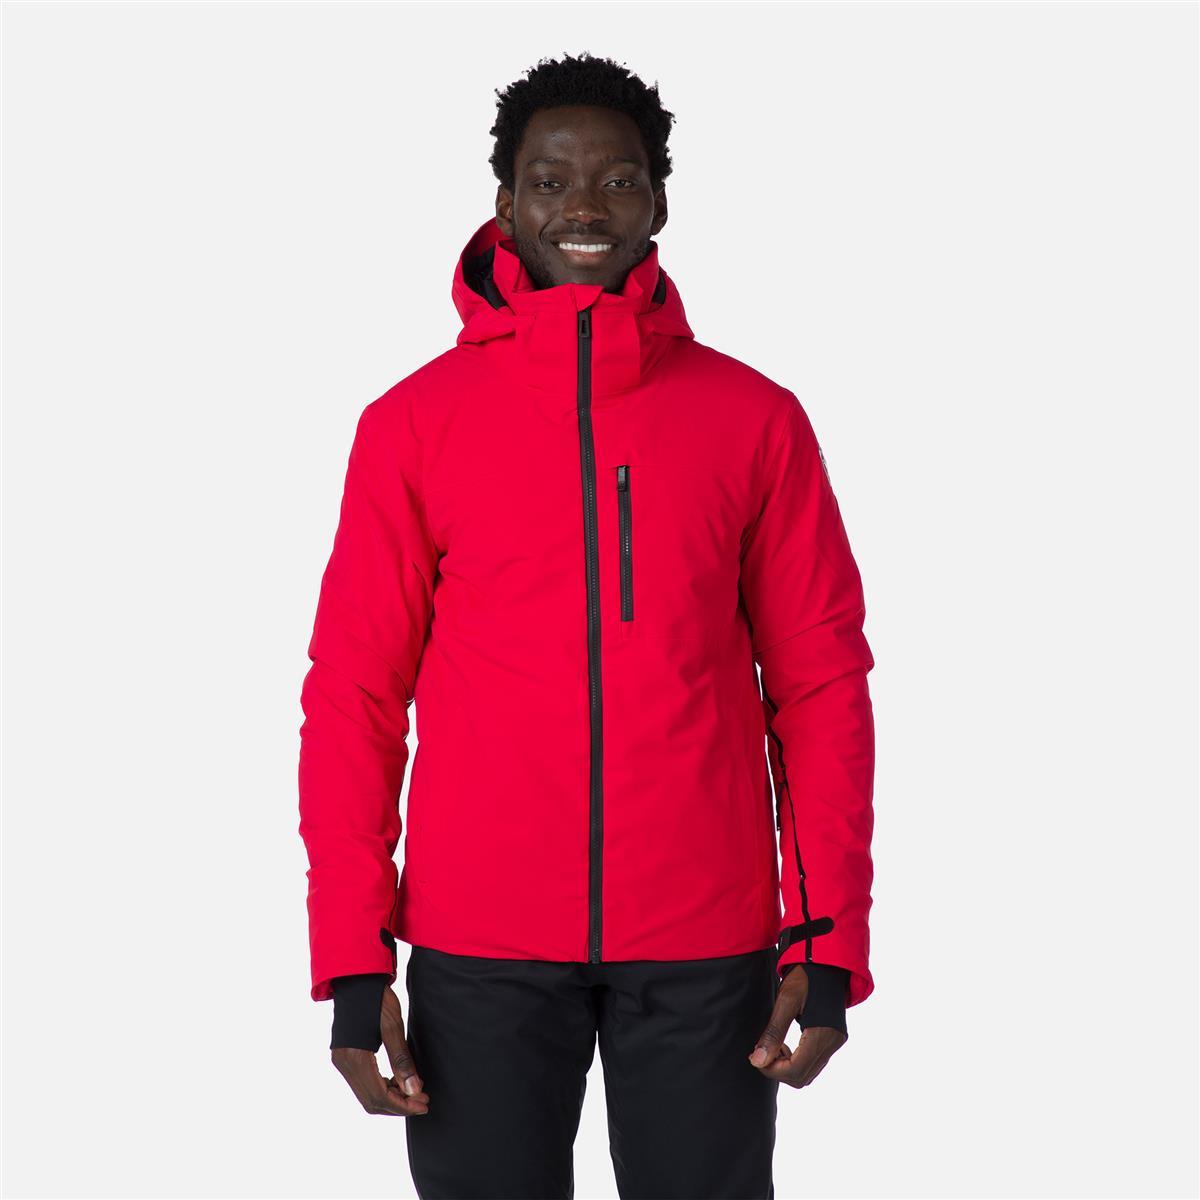 ROSSIGNOL 4WS Jacket, red